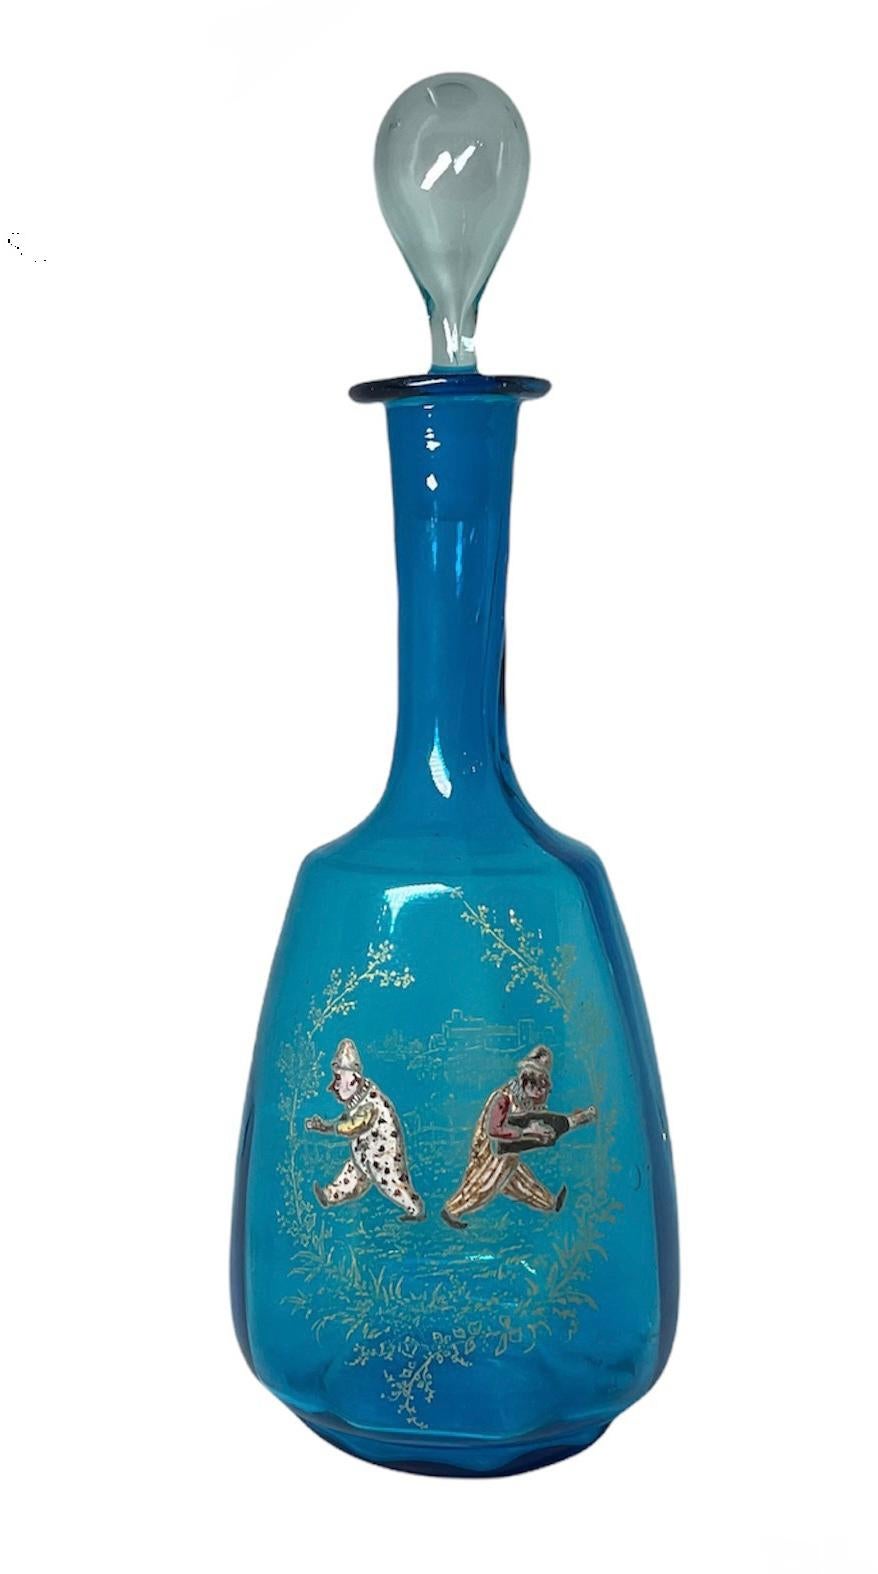 Il s'agit d'une carafe à vin Theodore Rossler en verre bleu royal soufflé à la main. Elle représente deux clowns marchant en sens inverse dans un paysage de campagne avec une clôture en bois et du feuillage autour d'eux, selon la technique de